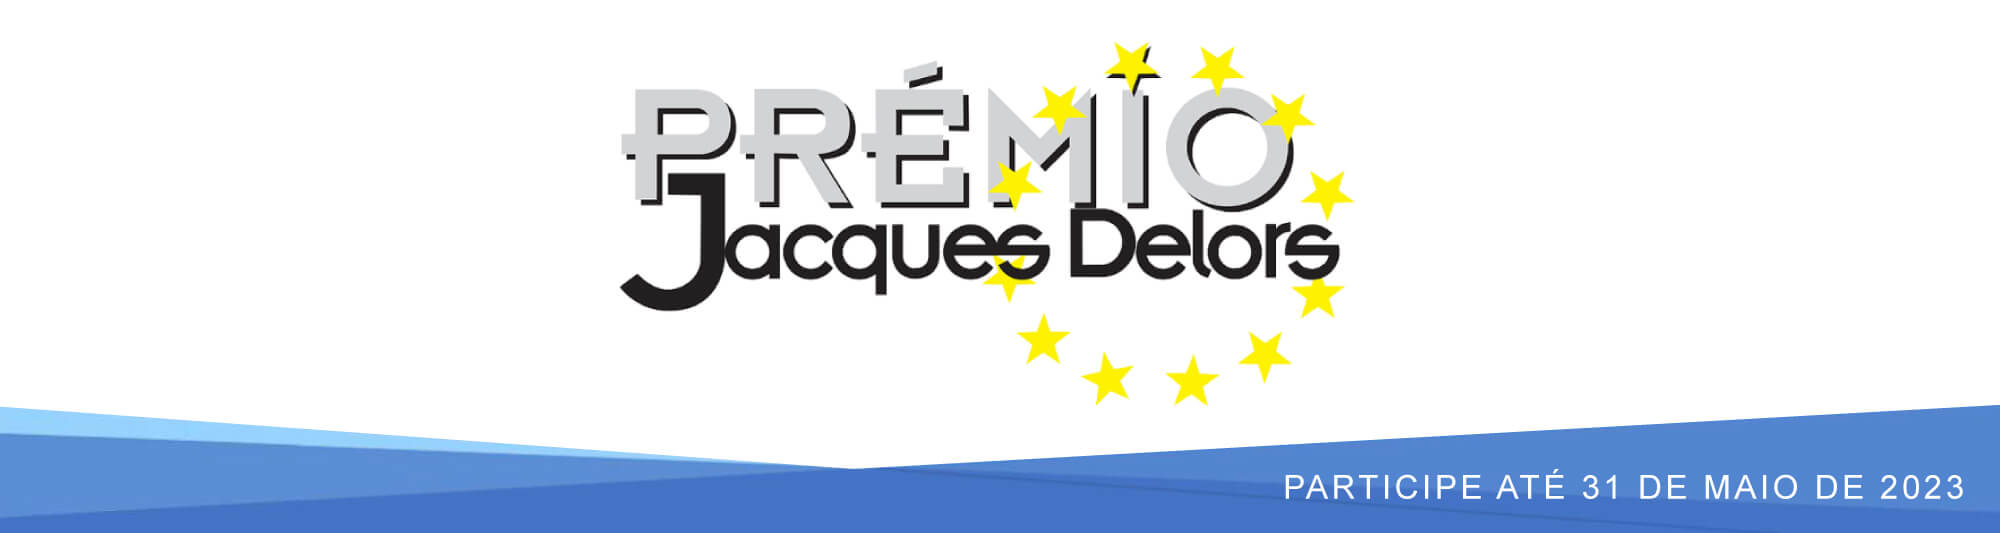 Prémio Jacques Delors, 2023 | Candidaturas até 31 de maio de 2023